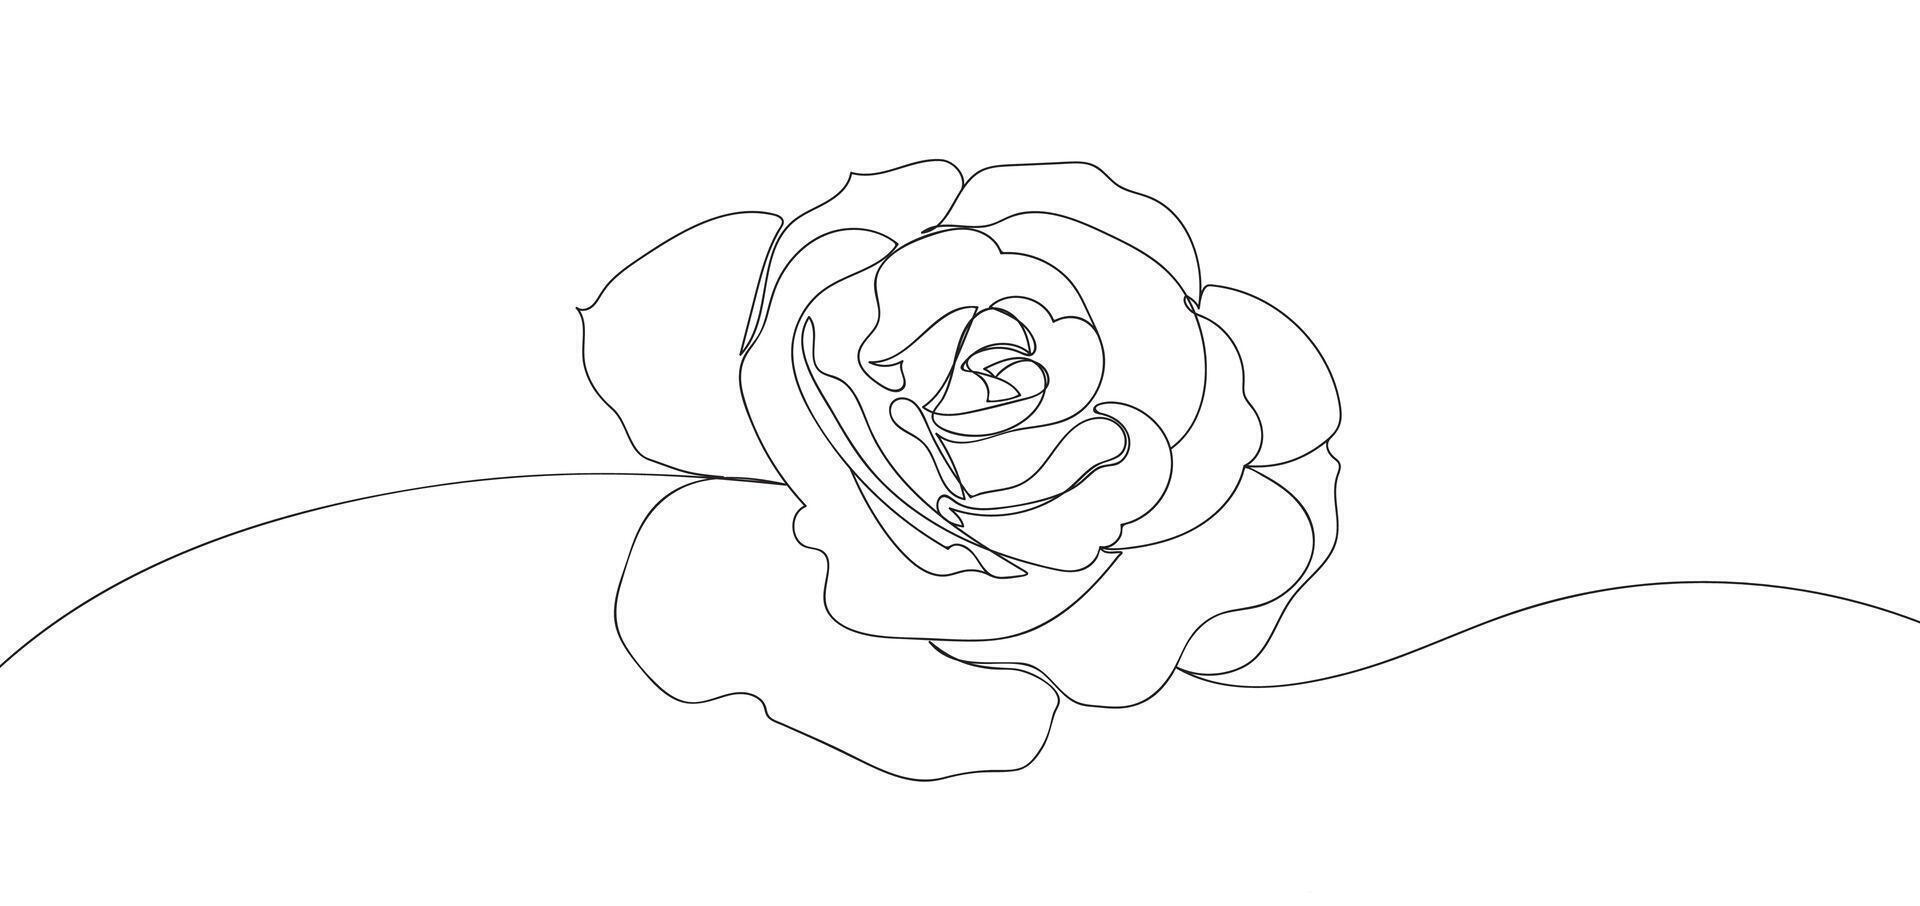 Rosa flor en soltero continuo línea dibujo estilo para logo o emblema. moderno vector ilustración